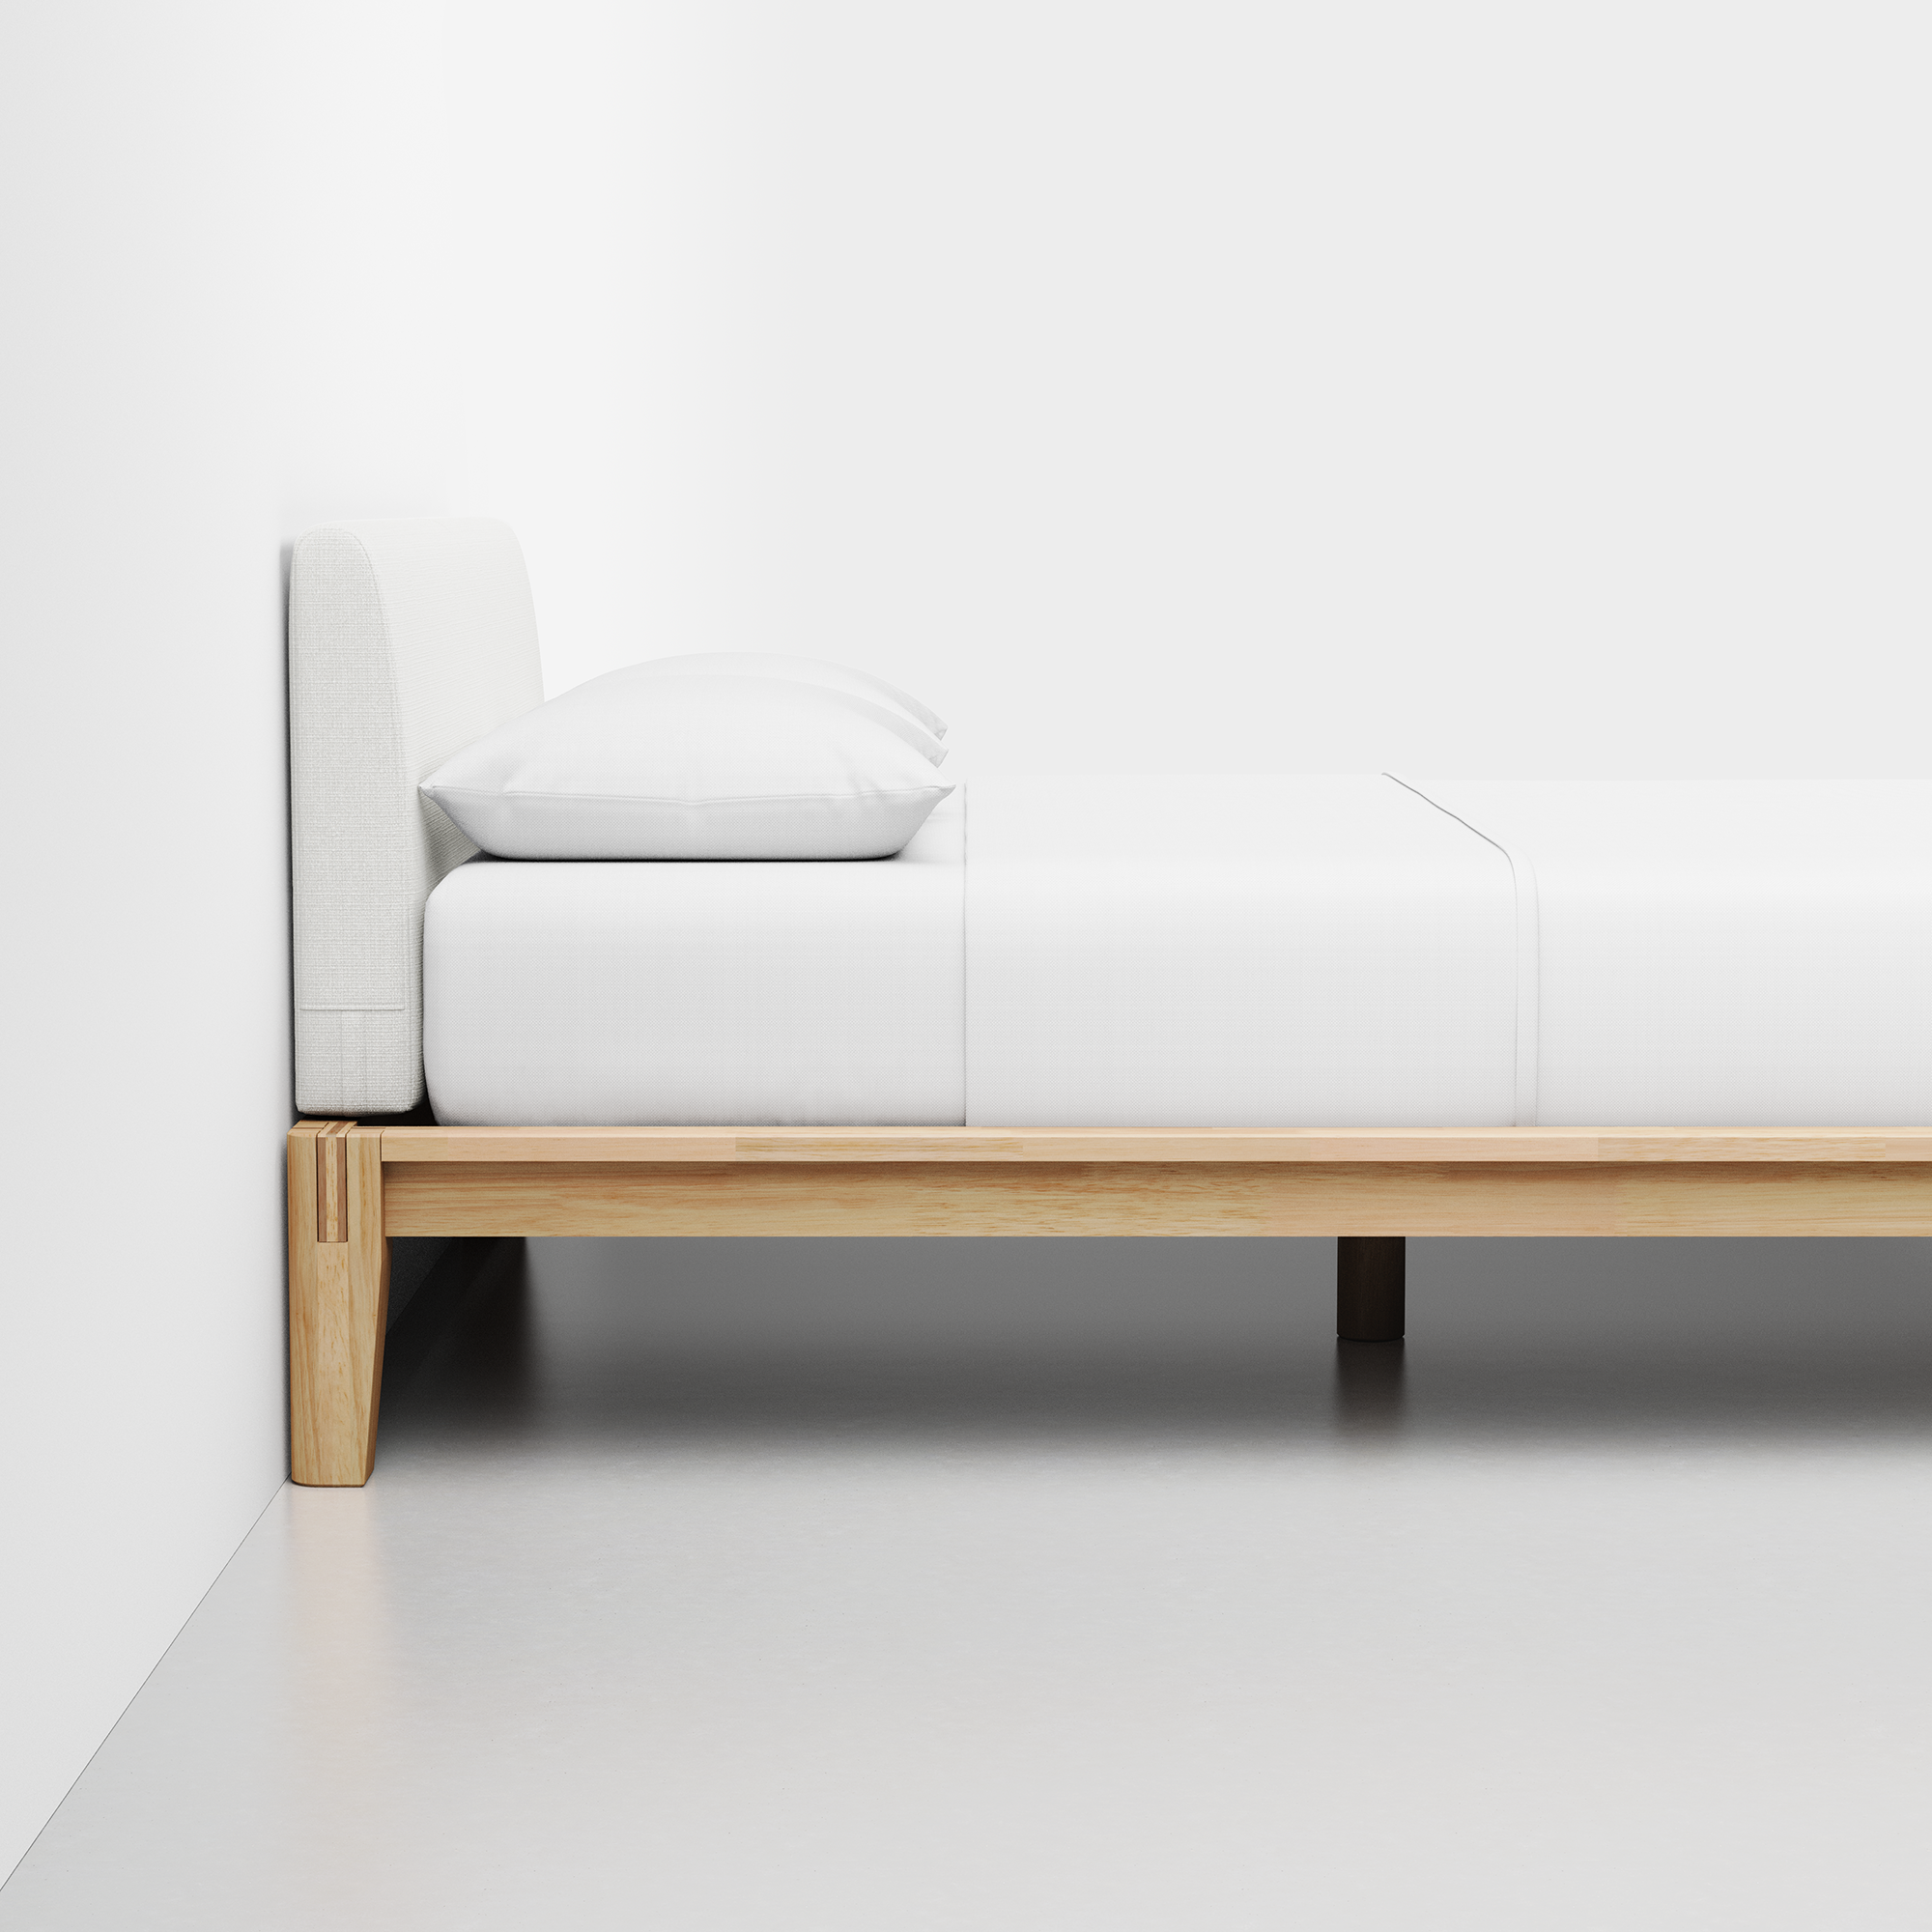 The Bed (Natural / Light Linen) - Render - Side